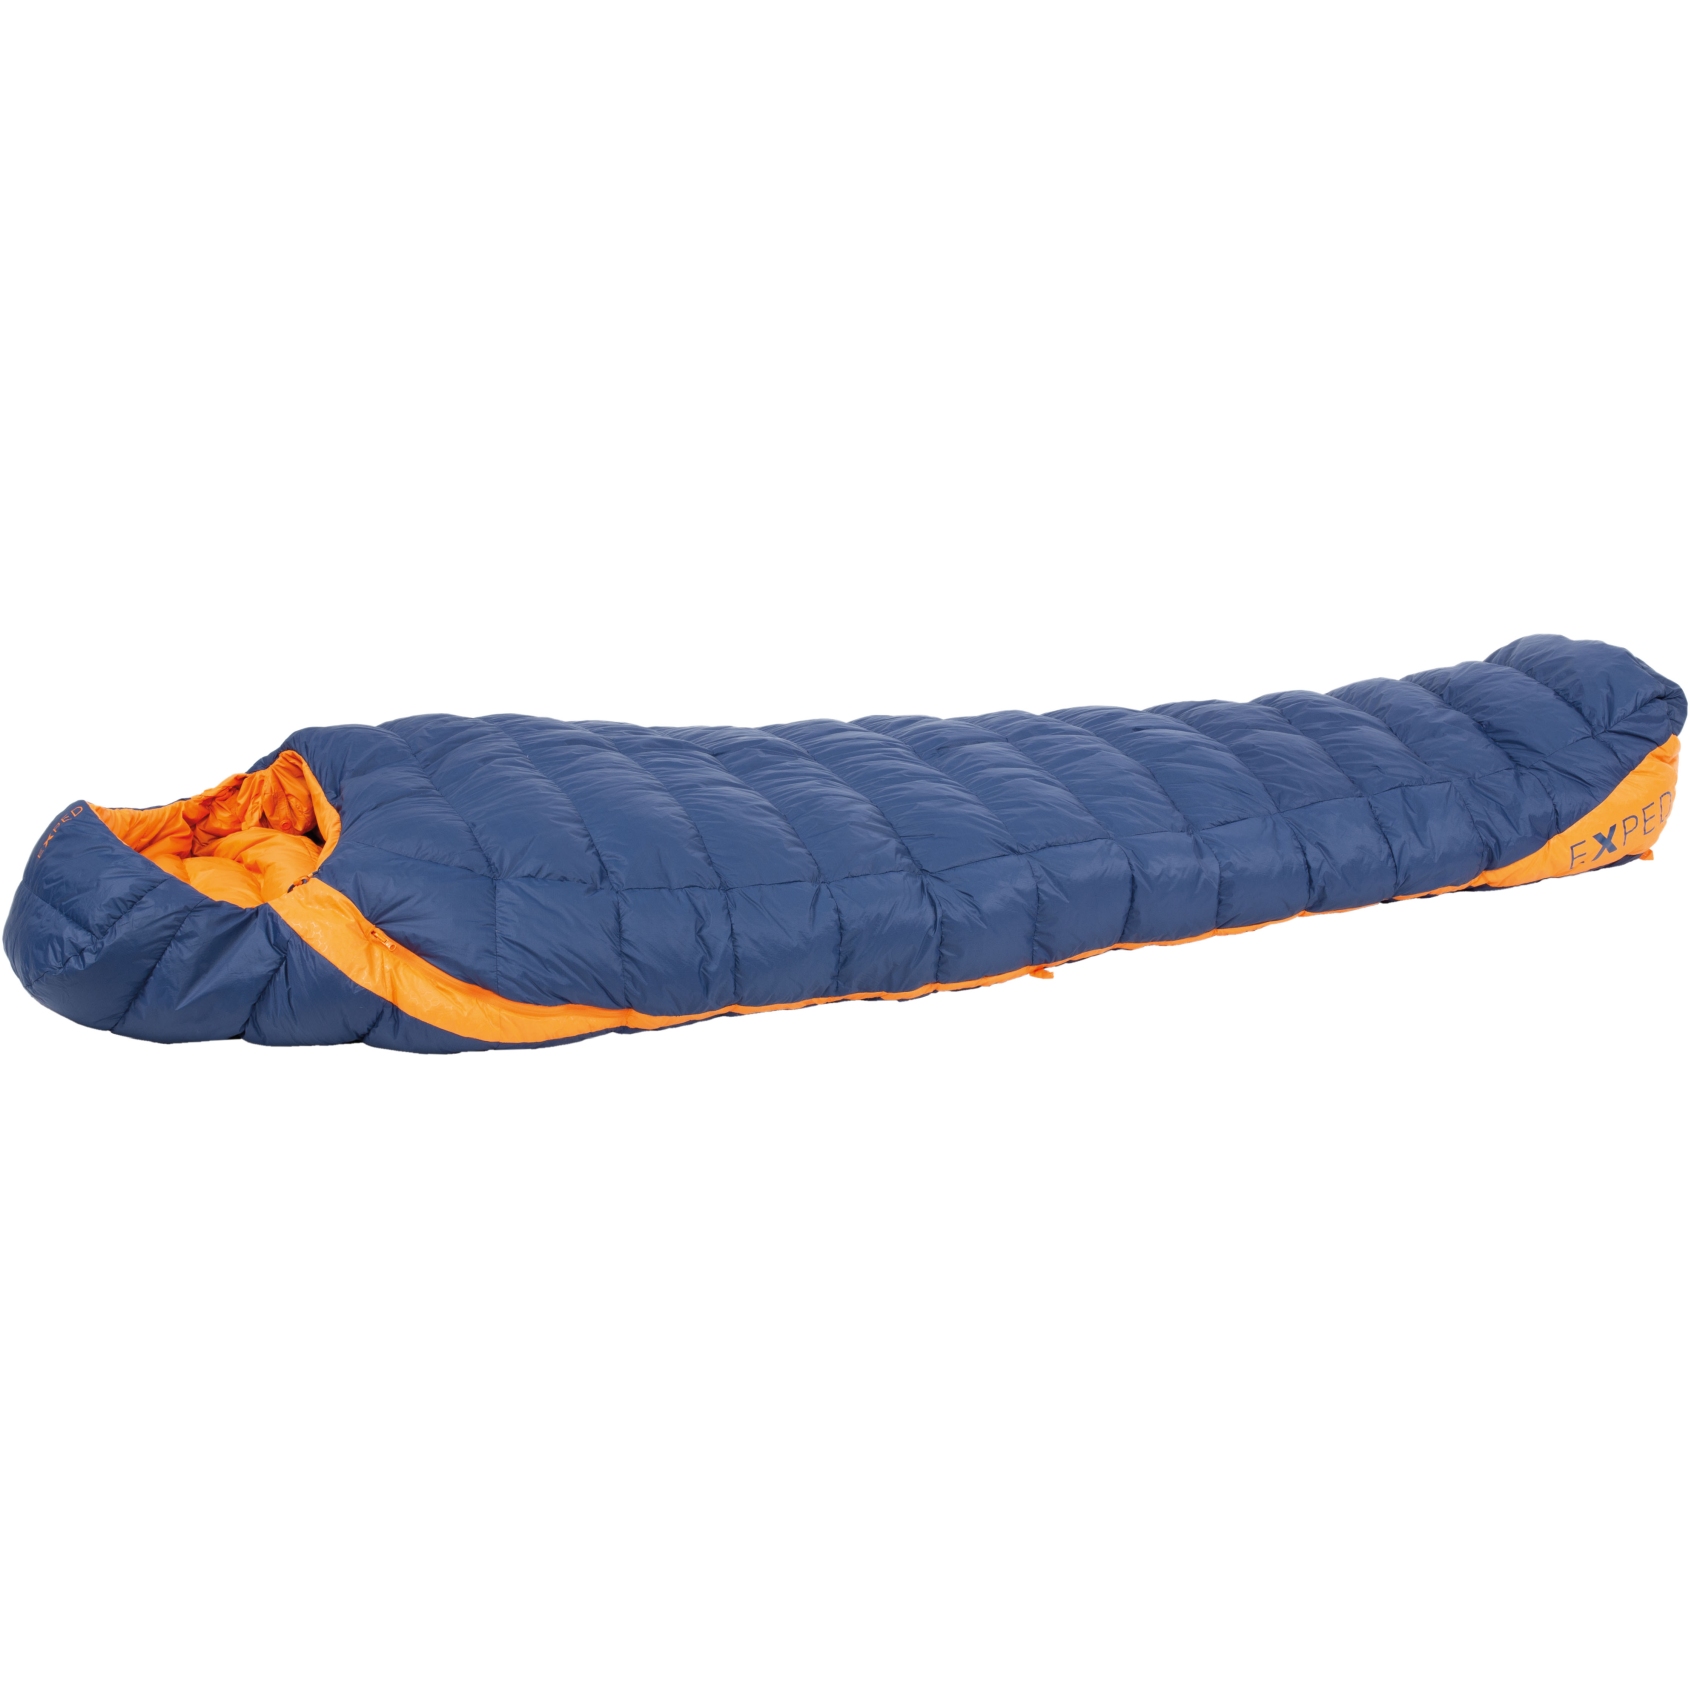 Produktbild von Exped Comfort -5° Schlafsack - XL - blue/orange